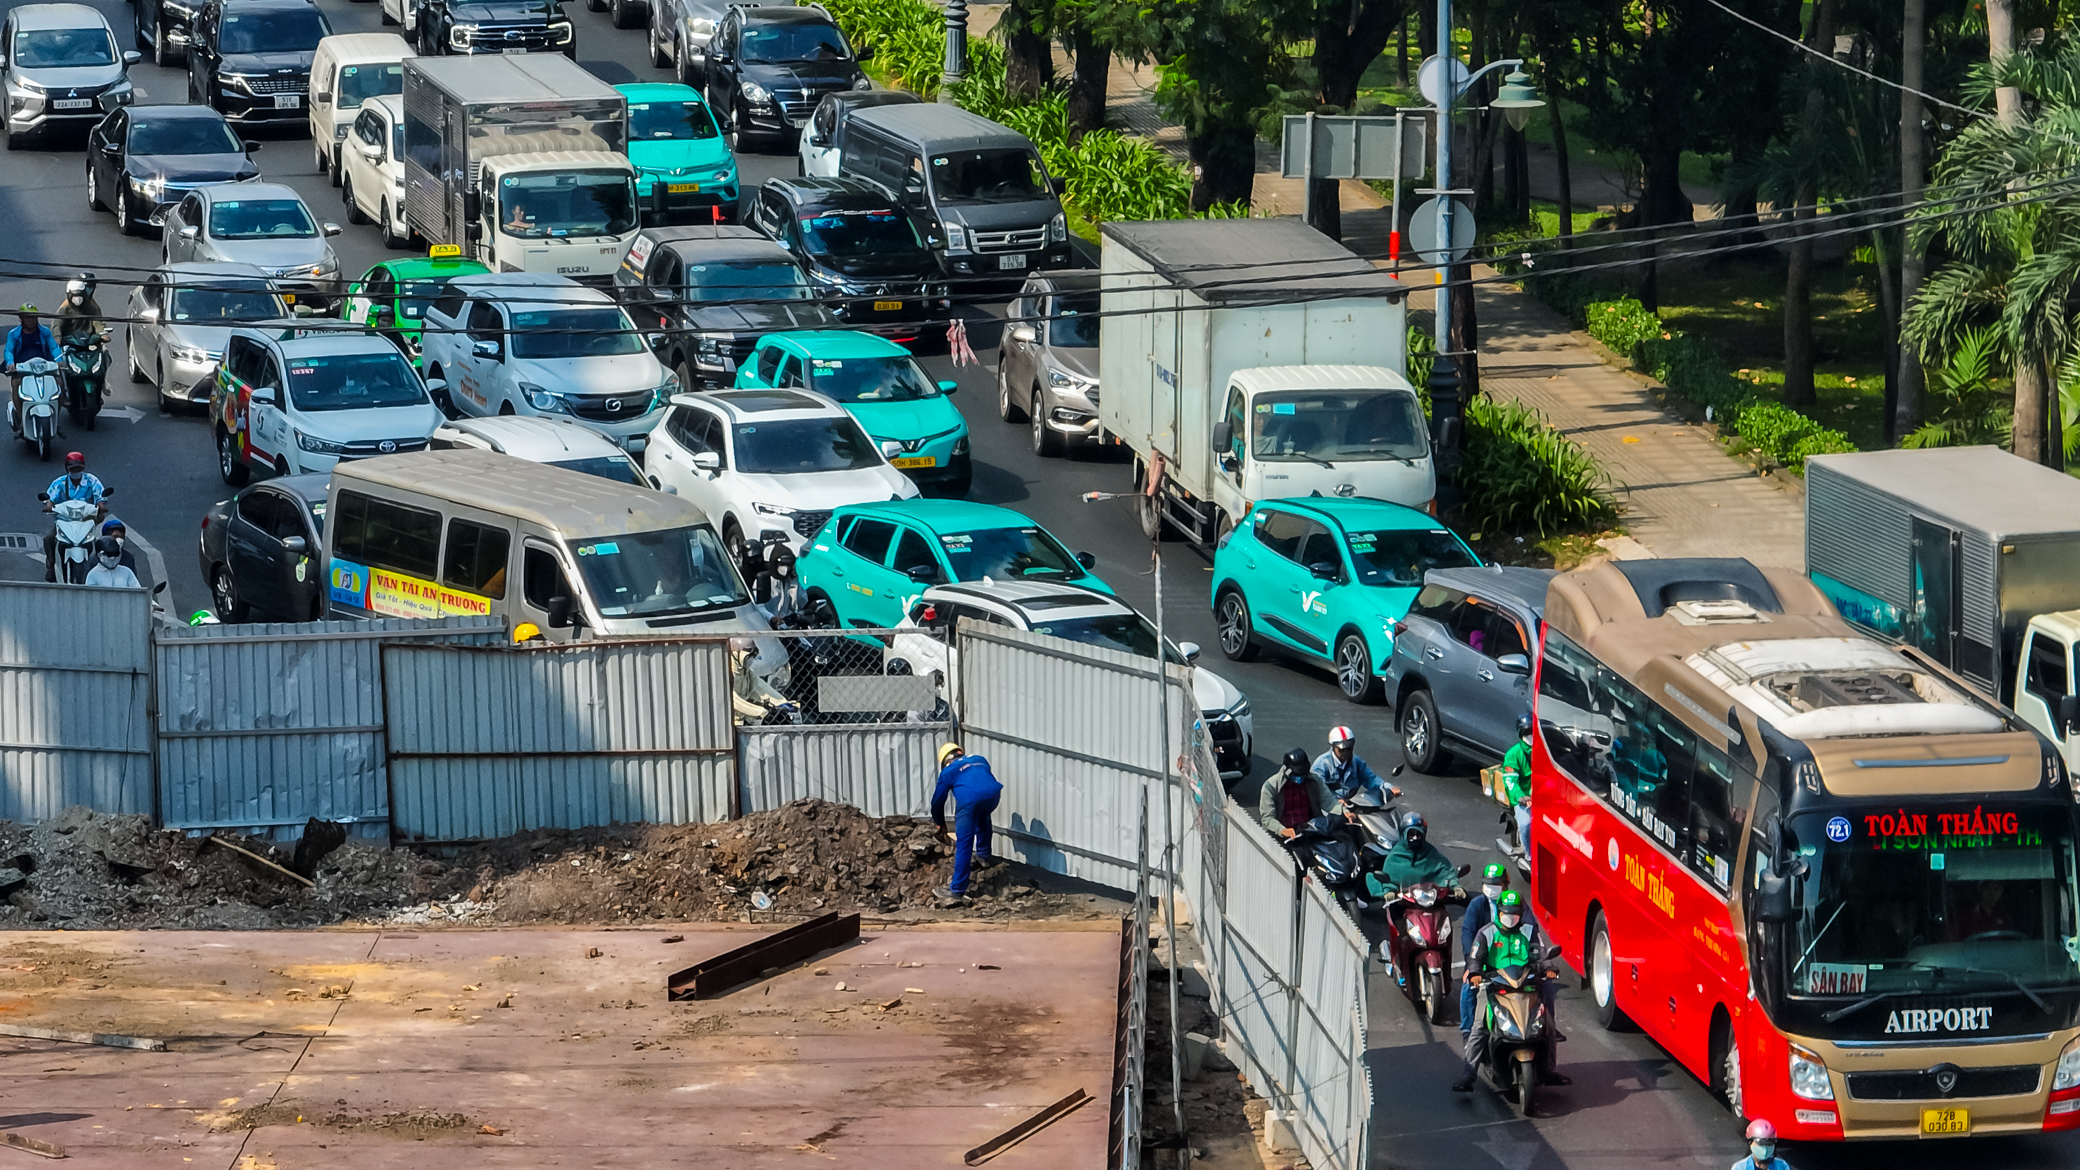 Cận cảnh cầu vượt tạm sắp đưa vào sử dụng ở cửa ngõ sân bay Tân Sơn Nhất- Ảnh 10.